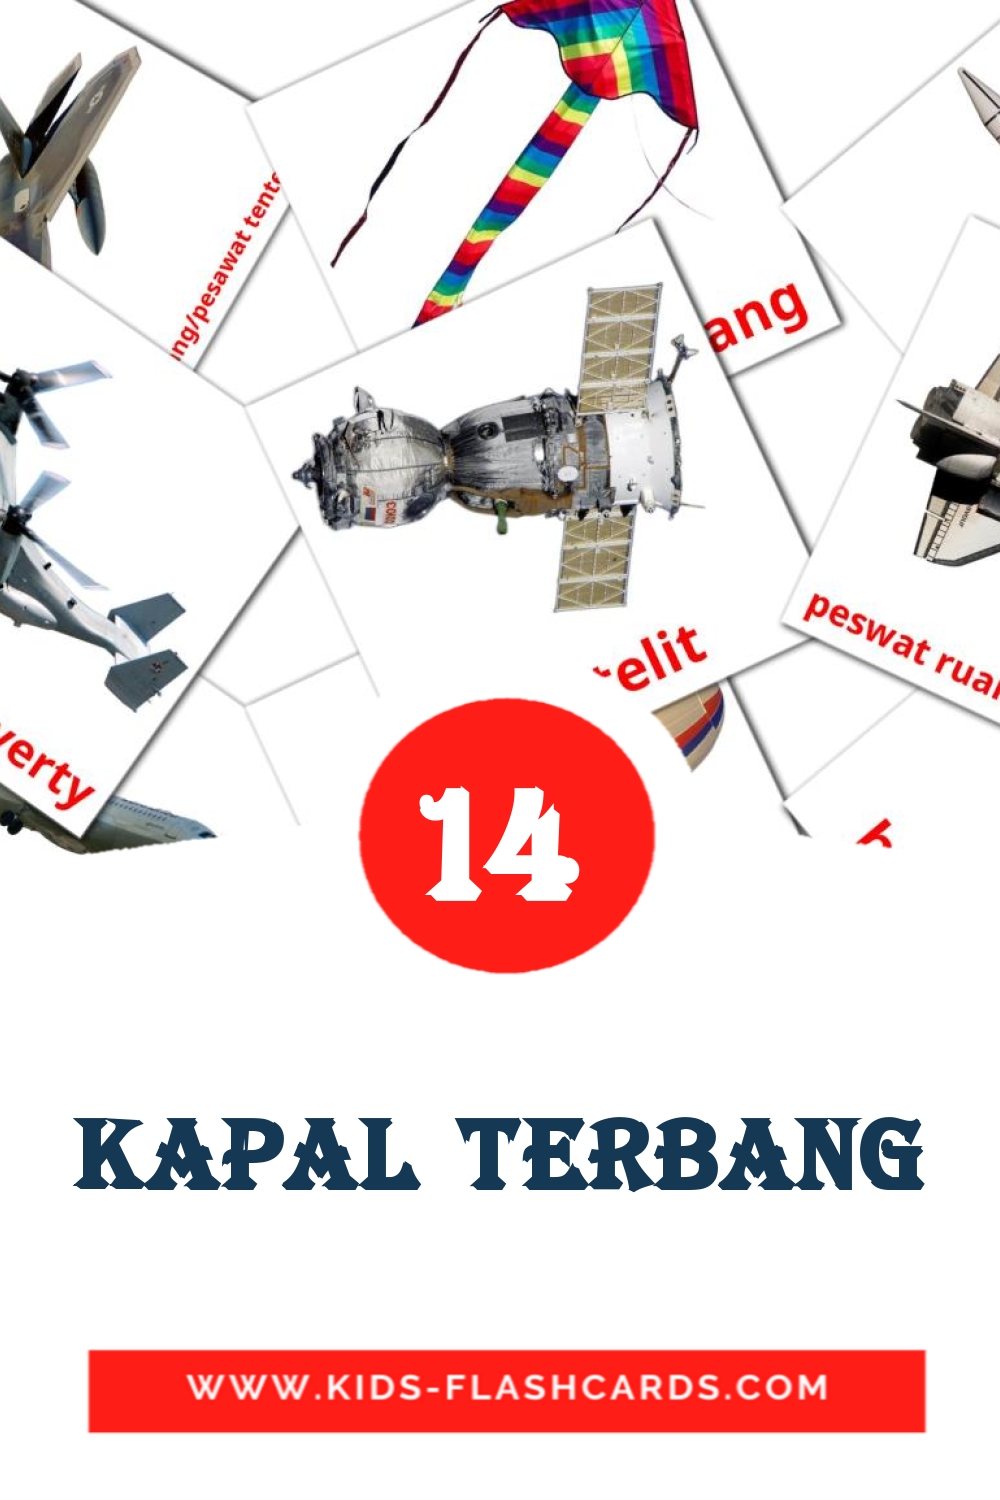 14 cartes illustrées de Kapal terbang pour la maternelle en malais